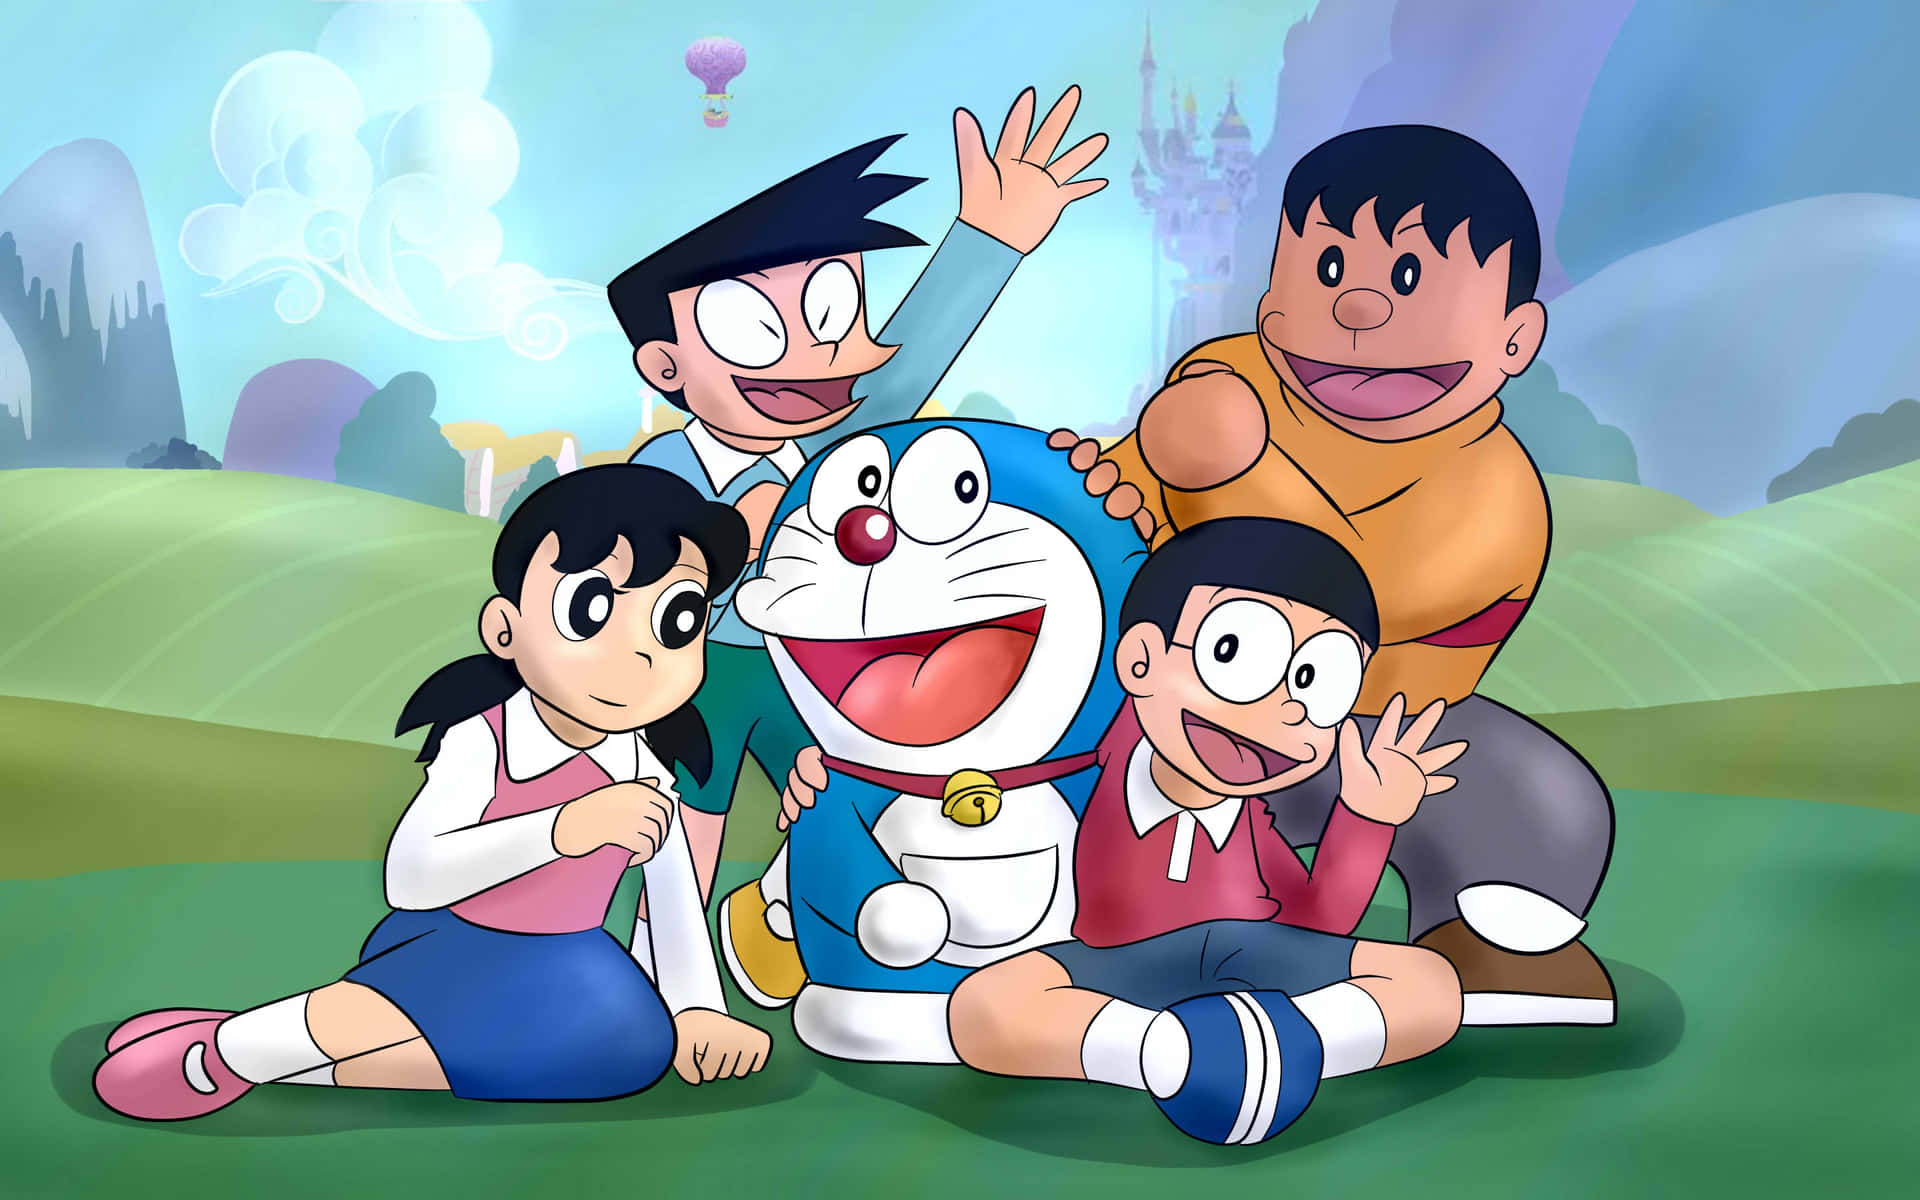 Ipersonaggi Del Cartone Animato Doraemon Si Mettono In Posa Di Fronte A Un Castello.